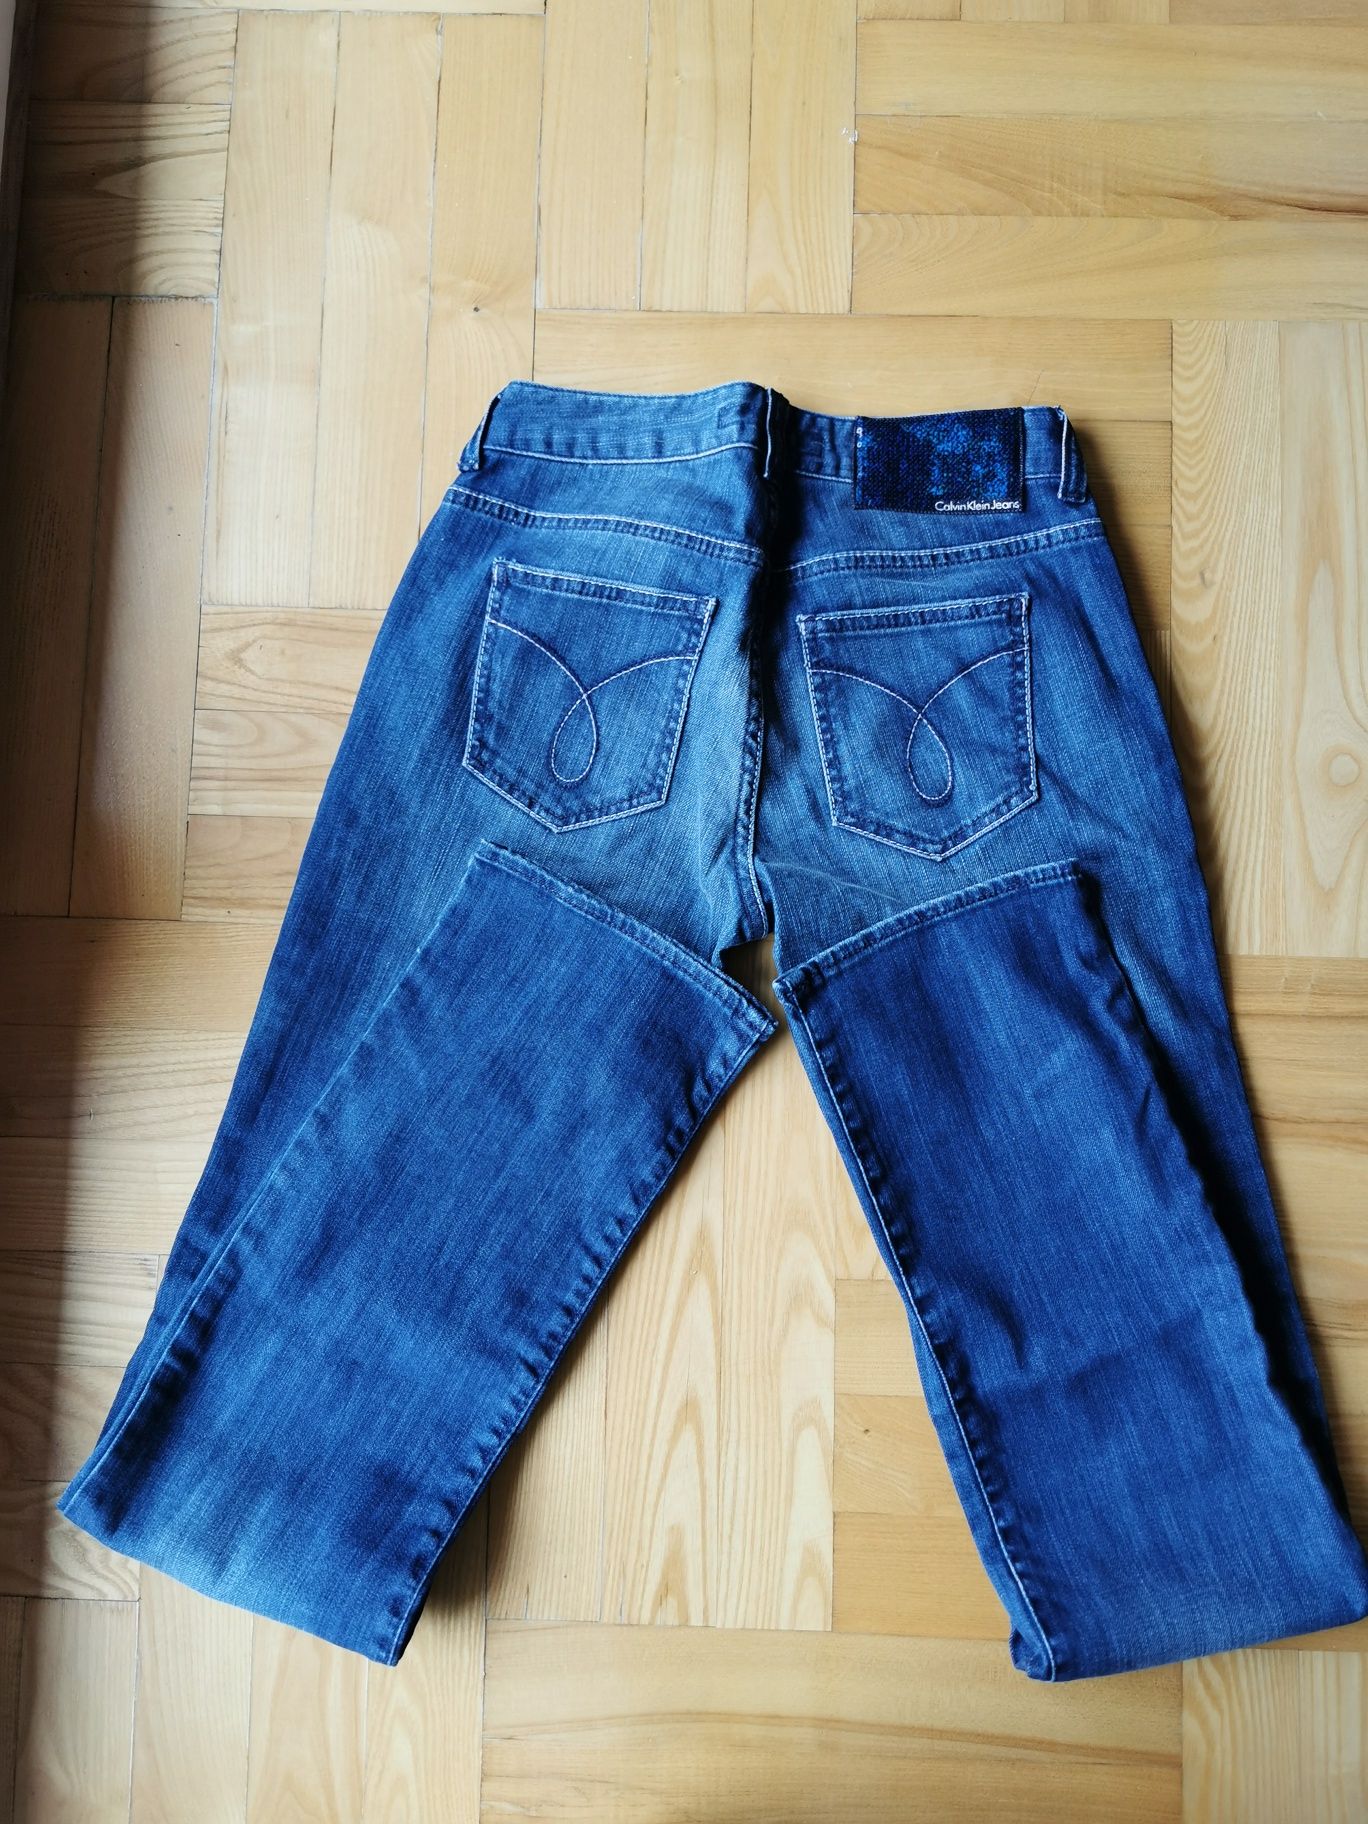 Damskie jeansy Calvin Klein spodnie jeansowe proste W27 s 36